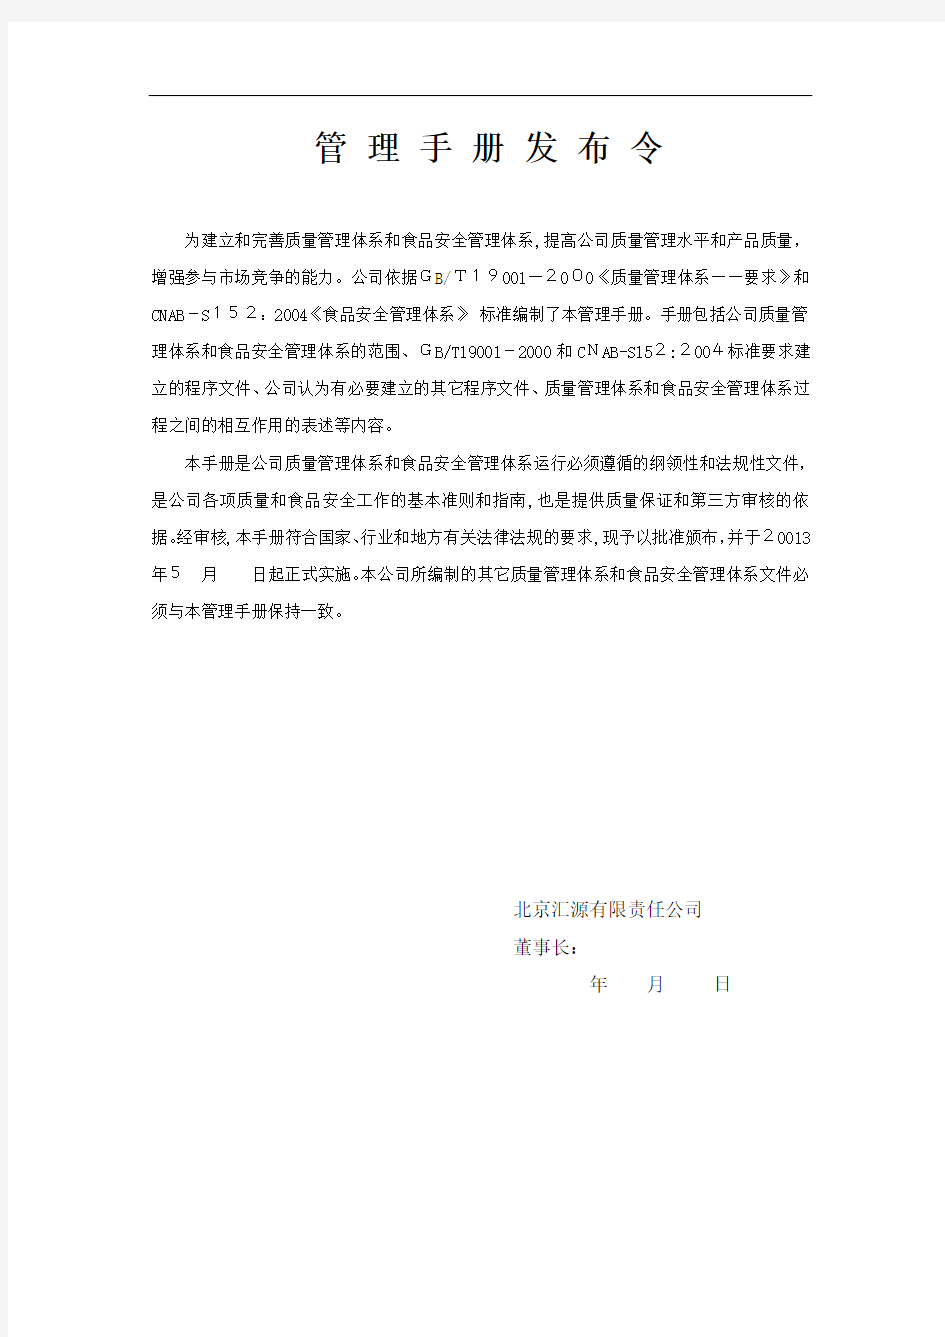 北京汇源有限责任公司管理手册(定稿前的一个质量和食品